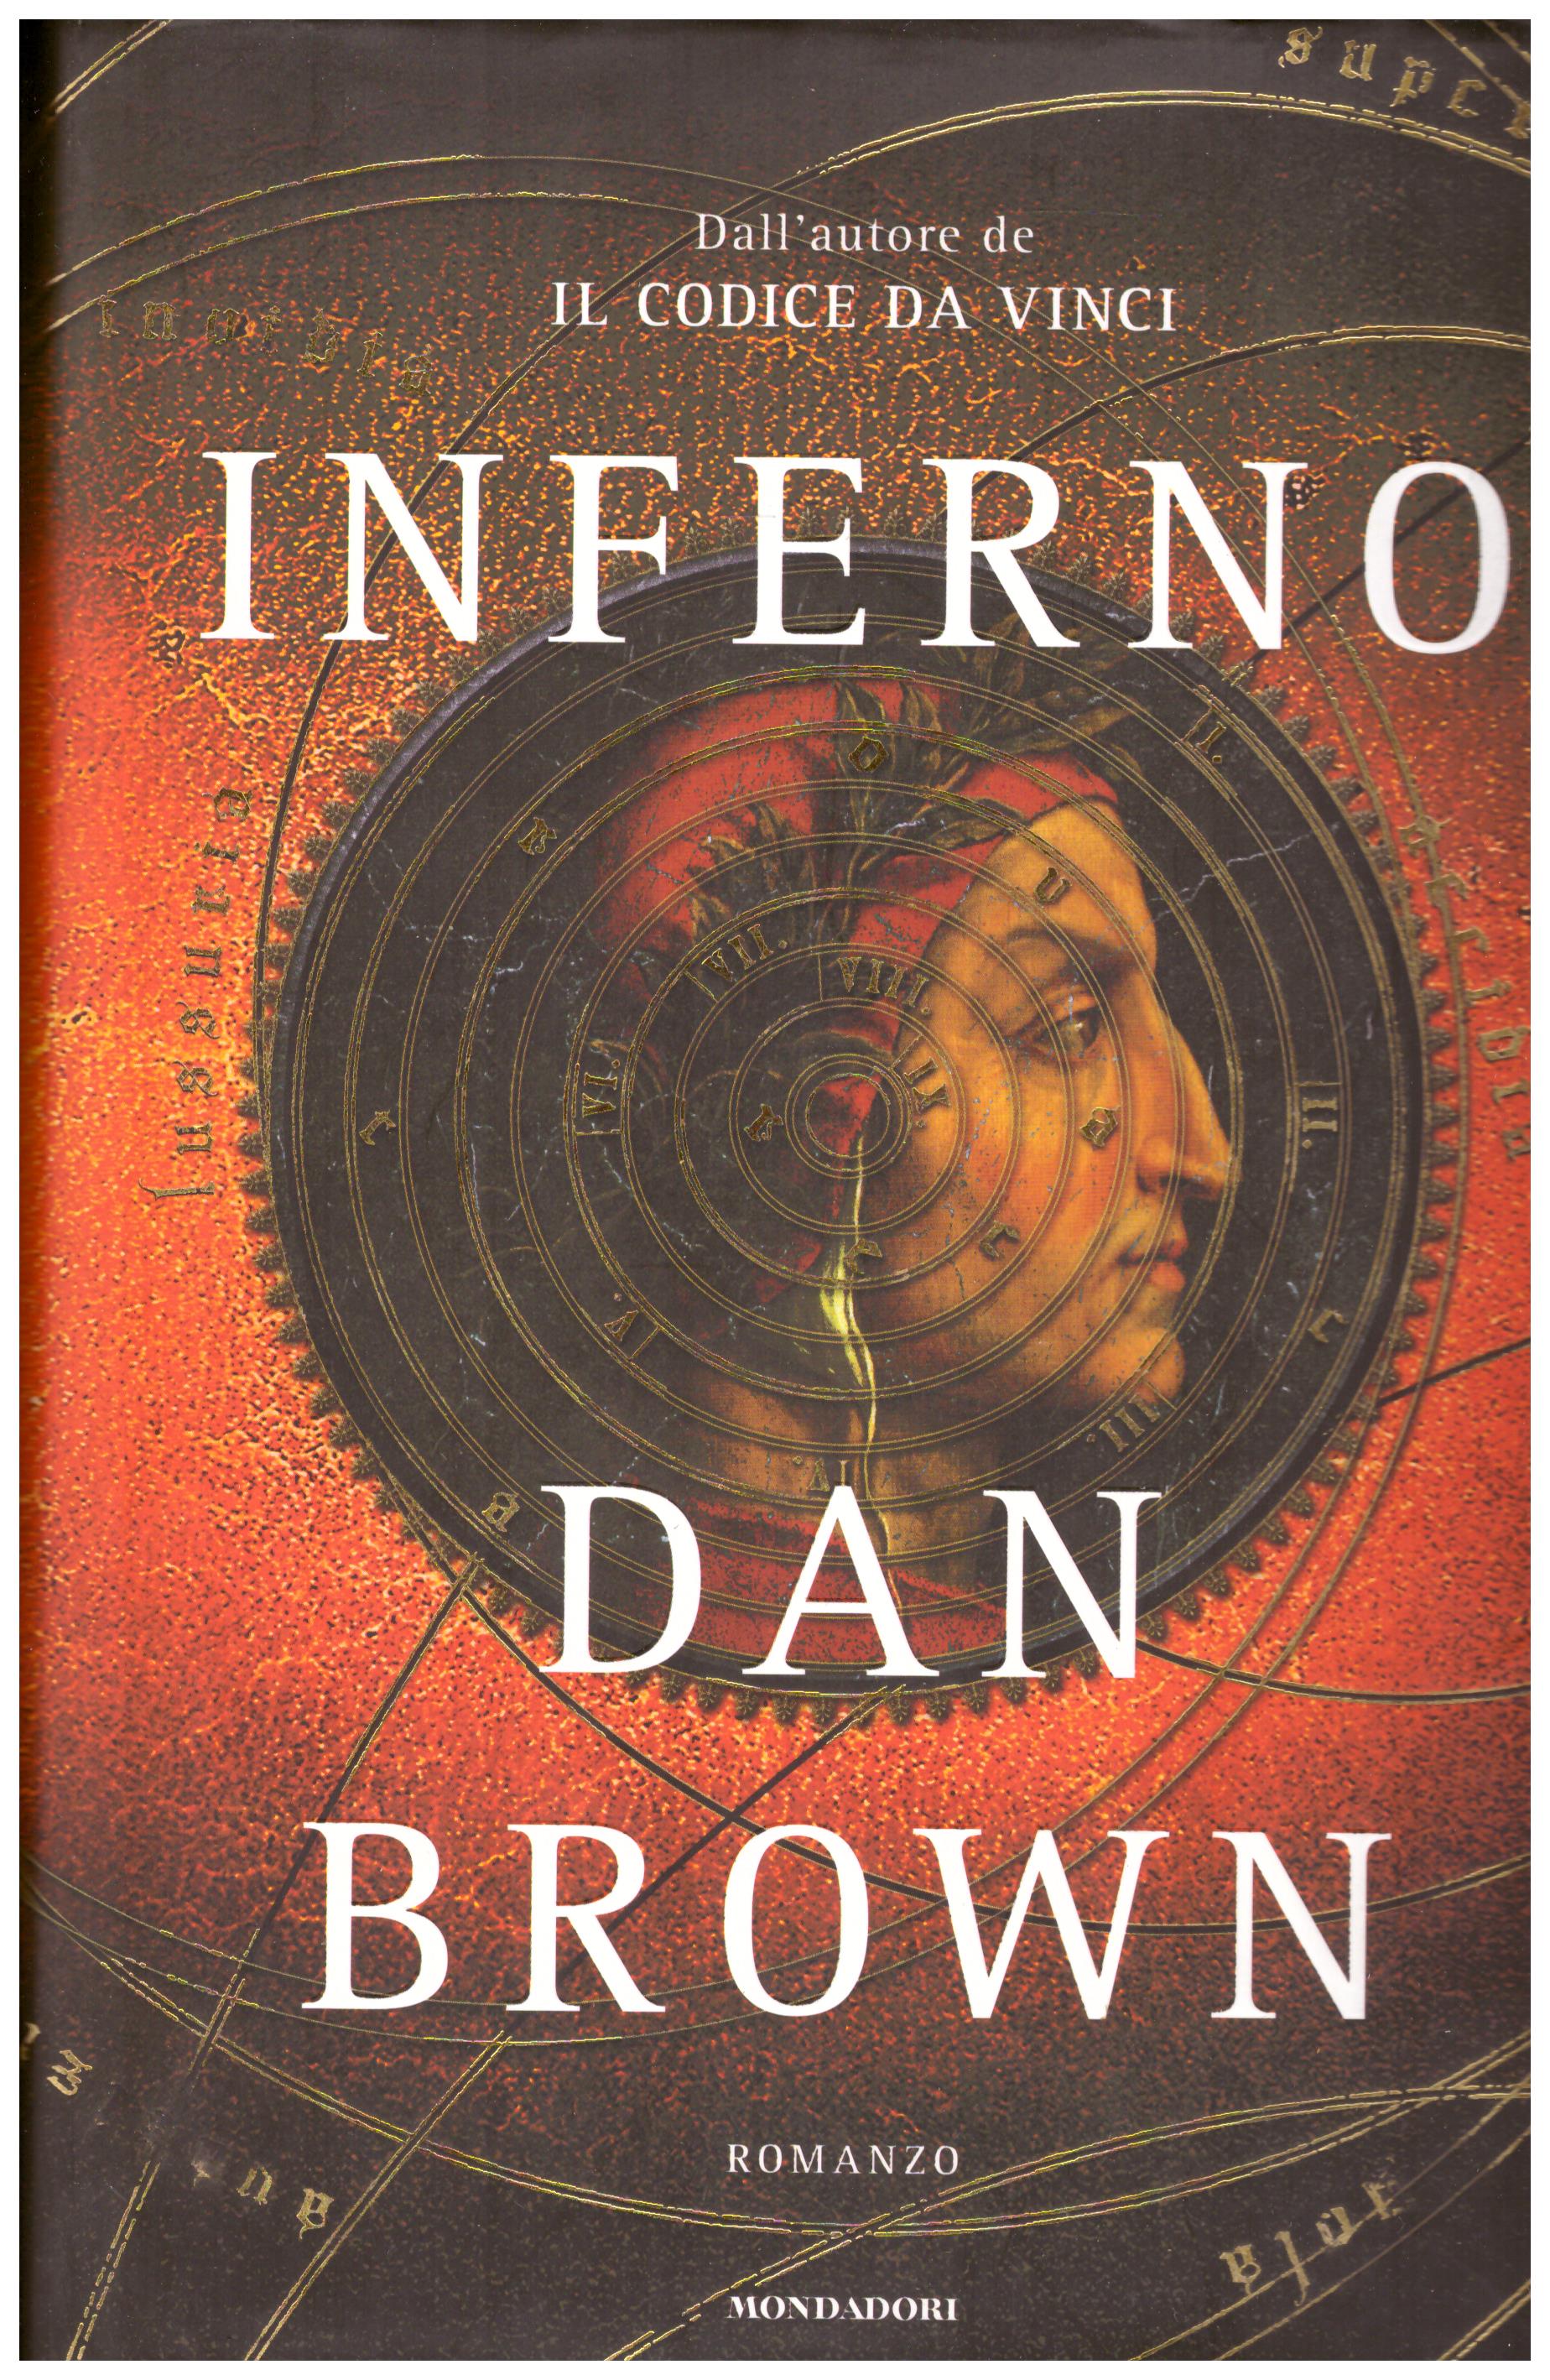 Titolo: Inferno Autore: Dan Brown Editore: Mondadori, 2013